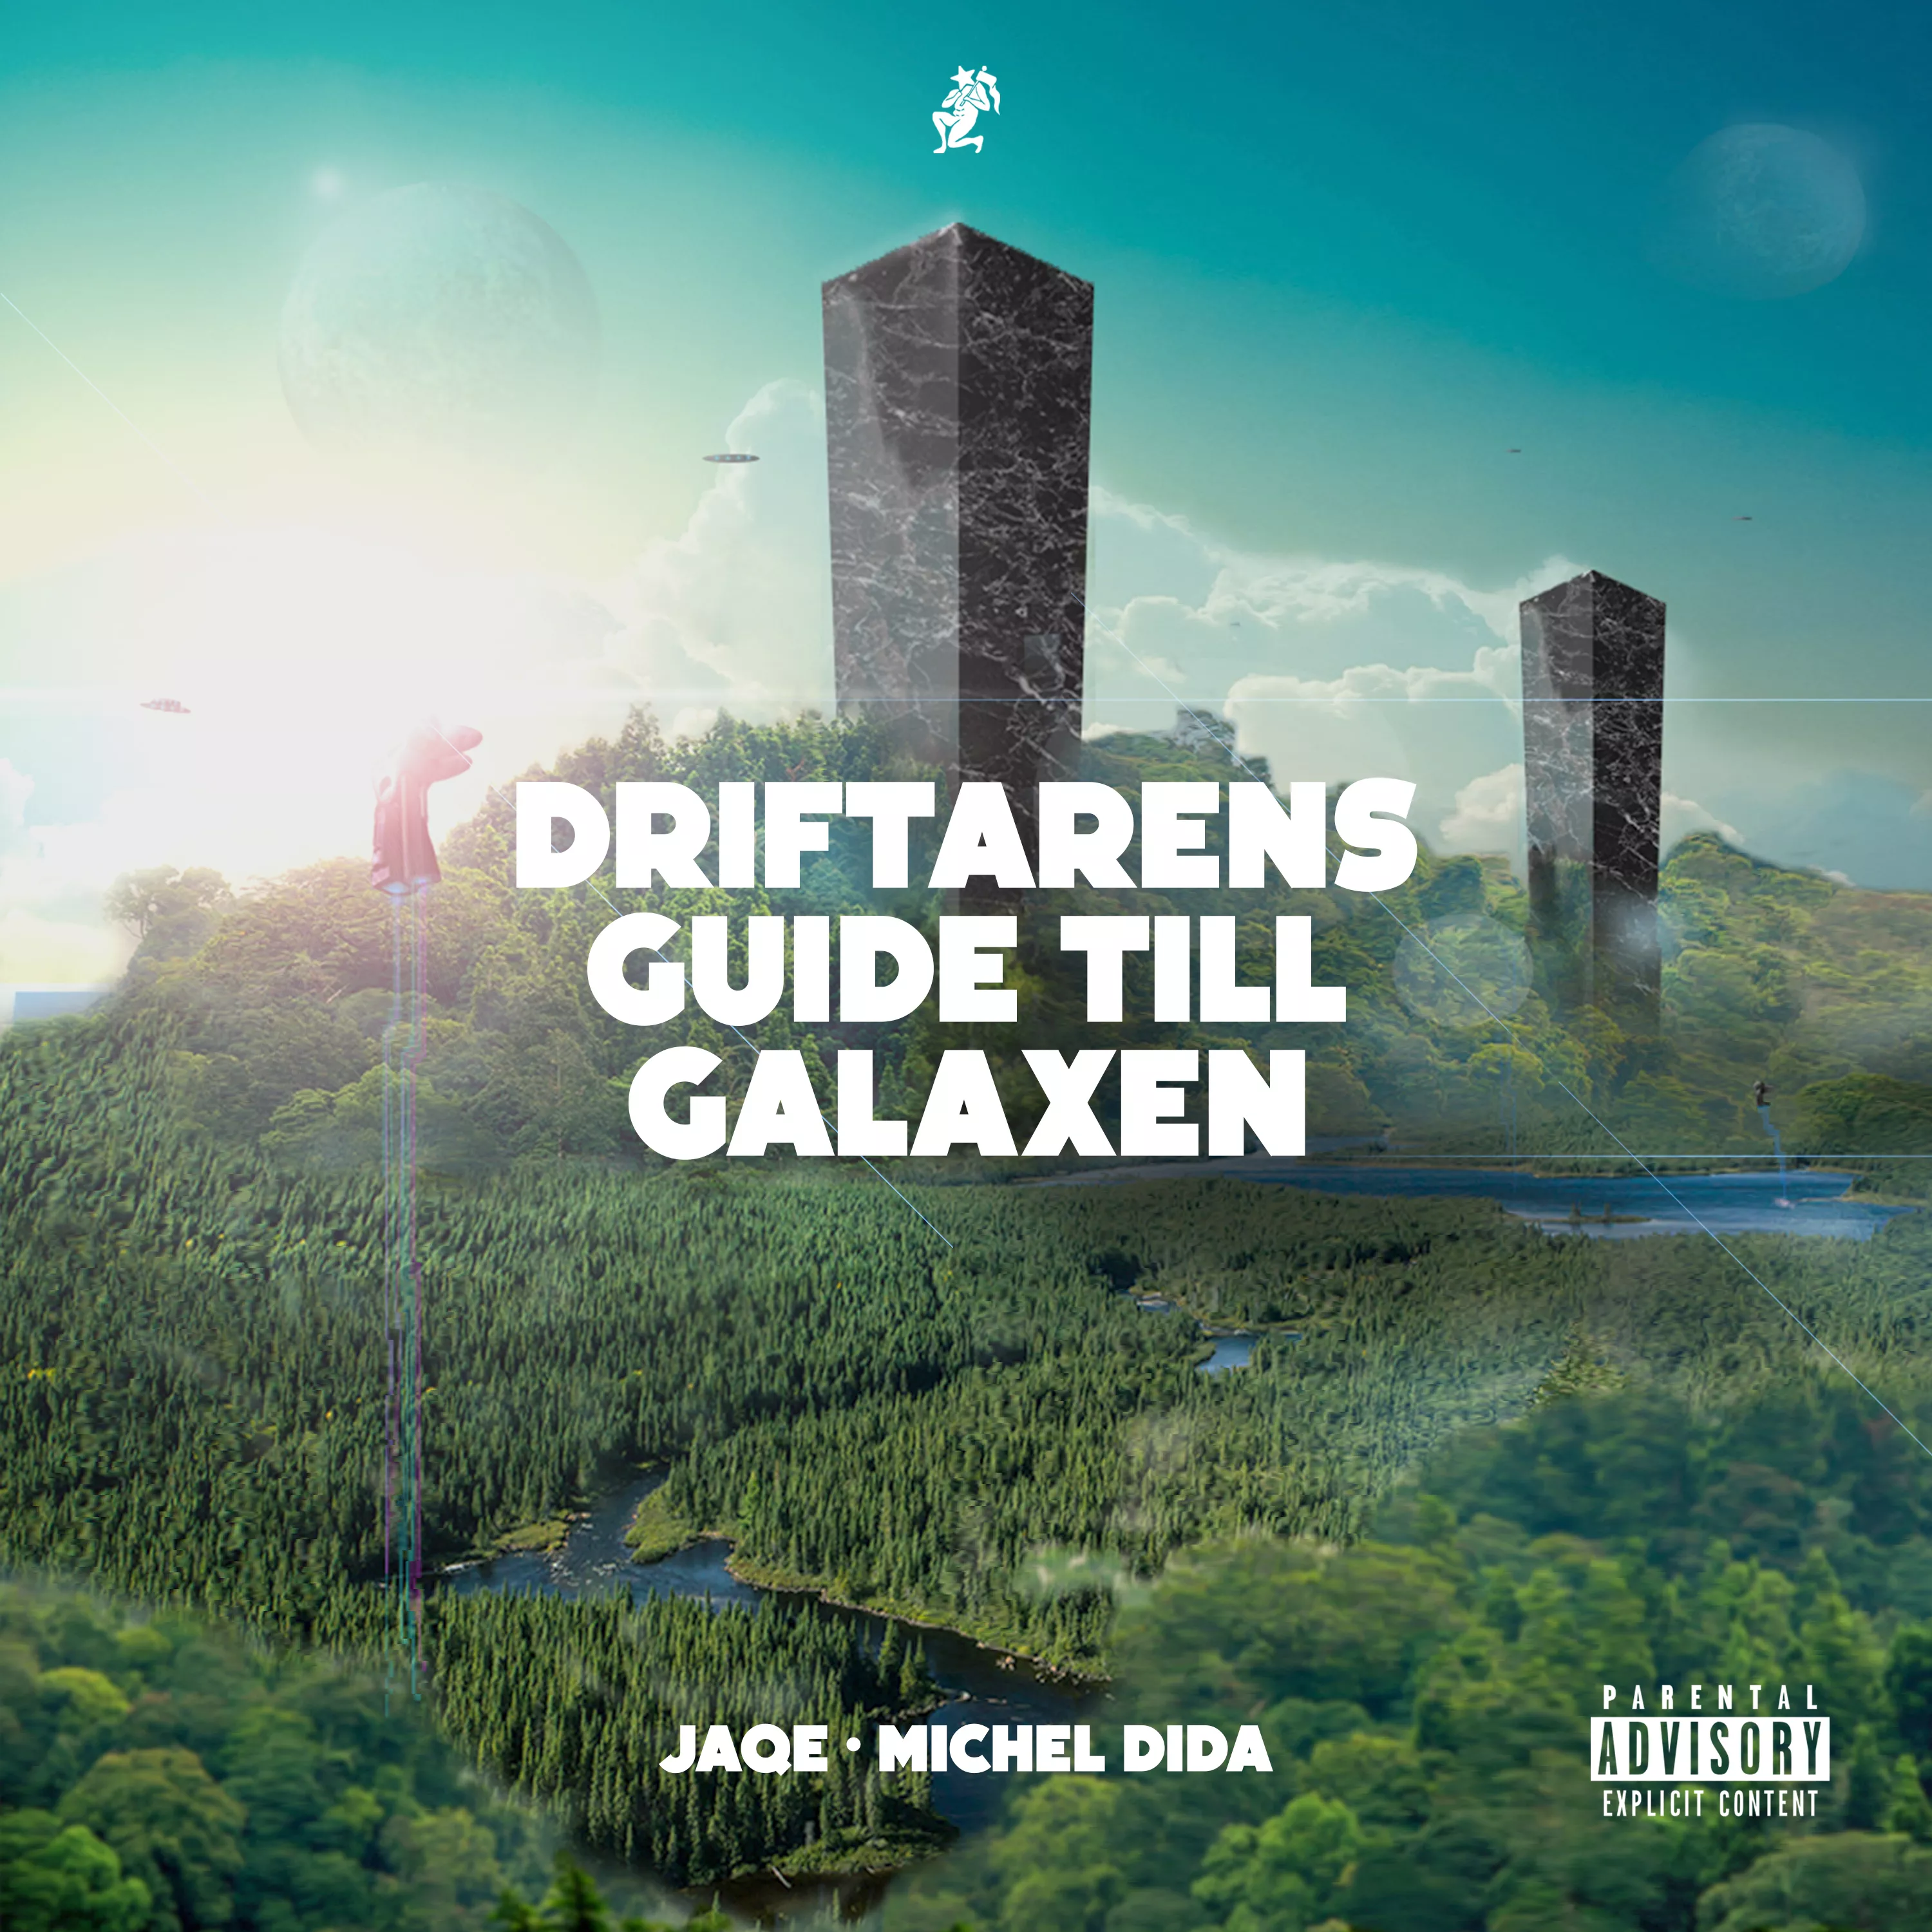 Driftarens Guide Till Galaxen - Jaqe & Michel Dida